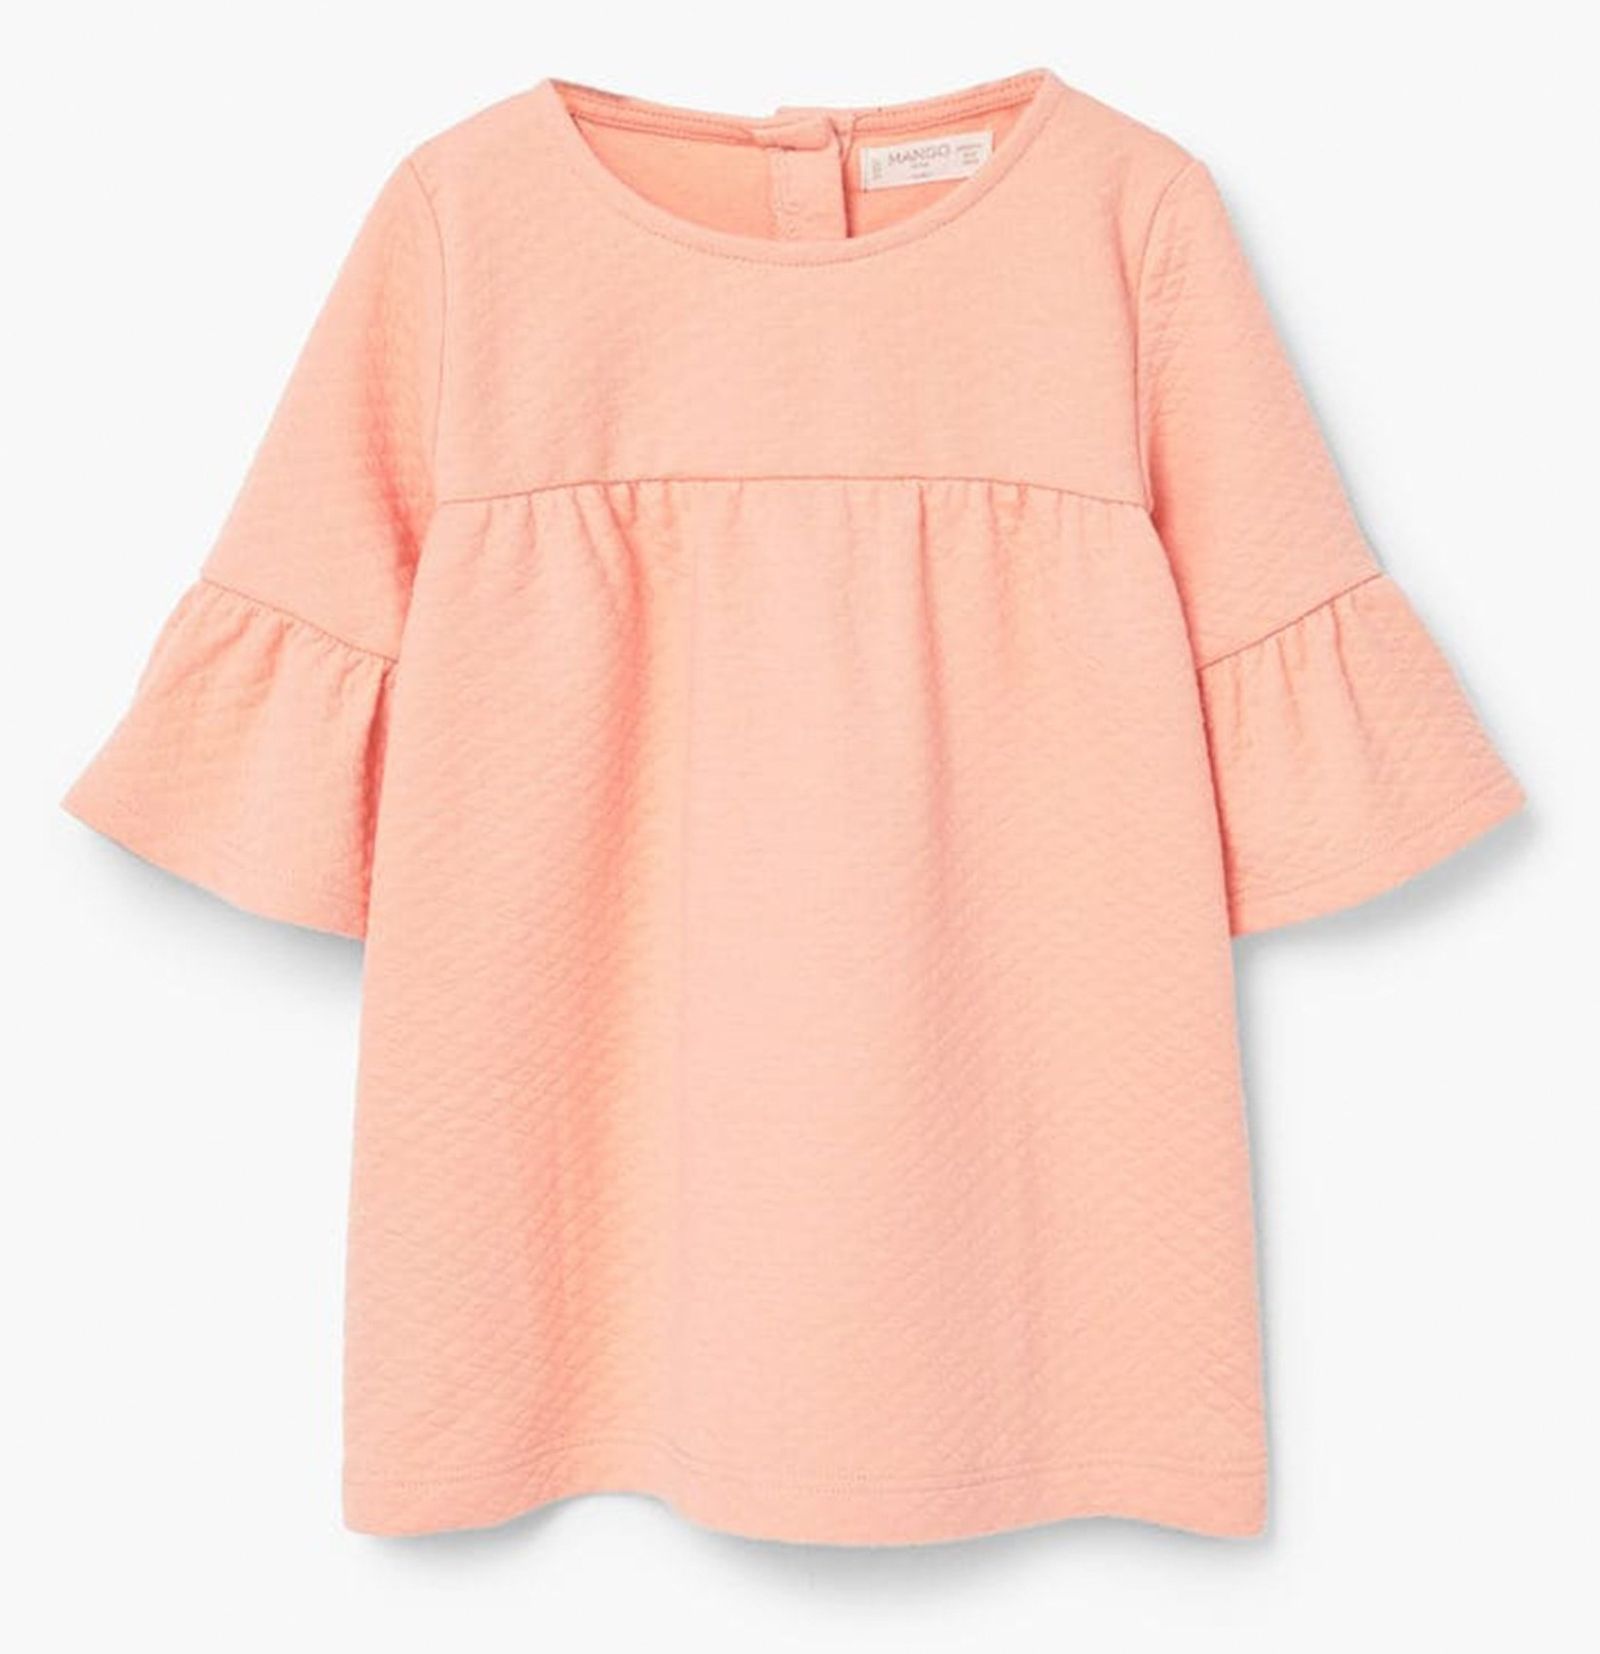 پیراهن ساده نوزادی دخترانه - مانگو - نارنجي  - 2